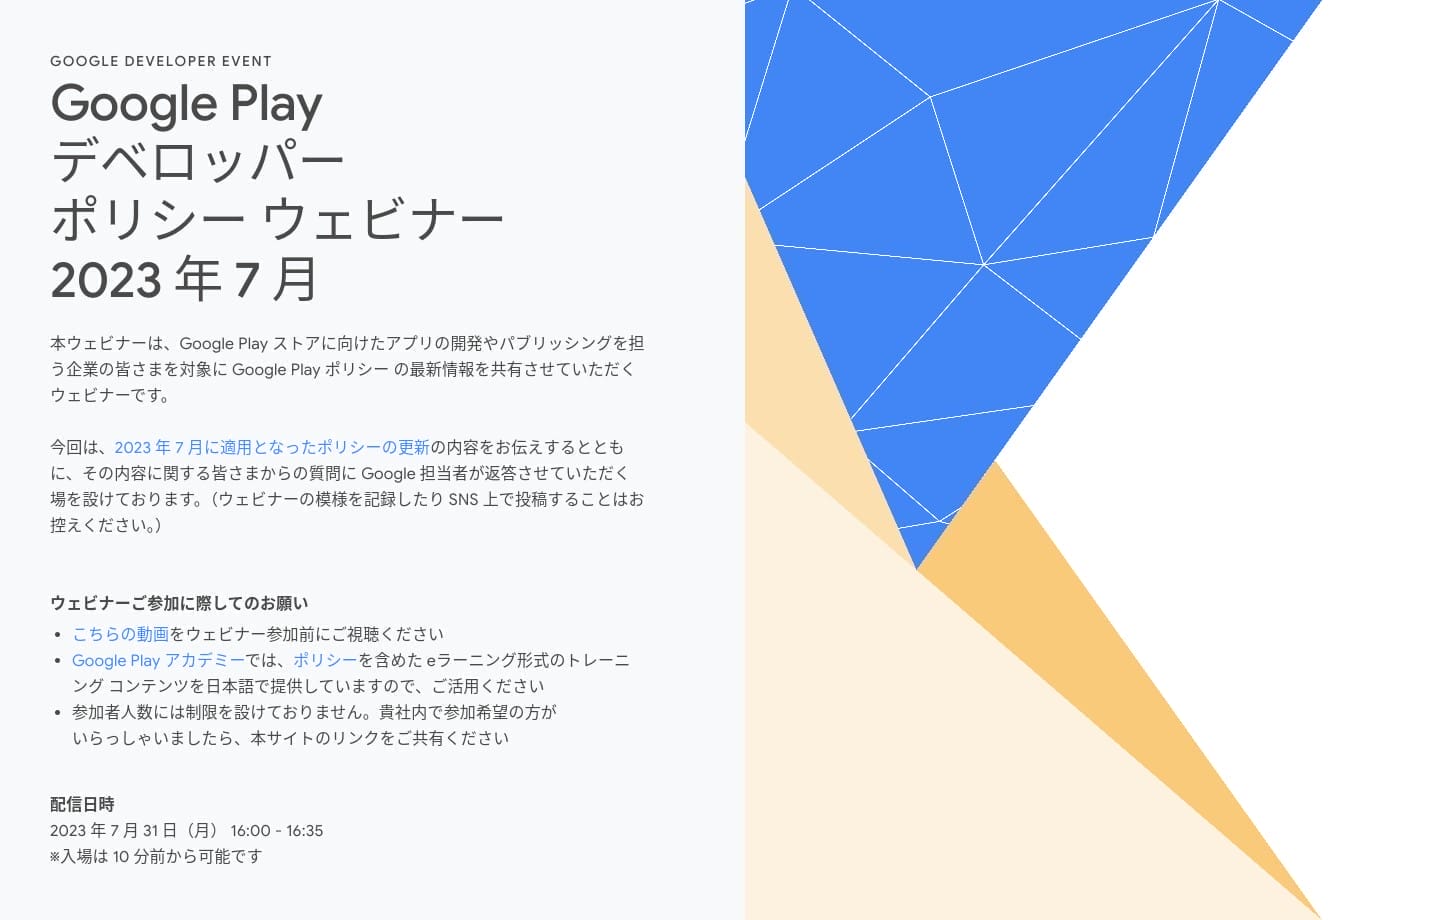 [Google Play] Google Play デベロッパー ポリシー ウェビナー 2023 年 7 月